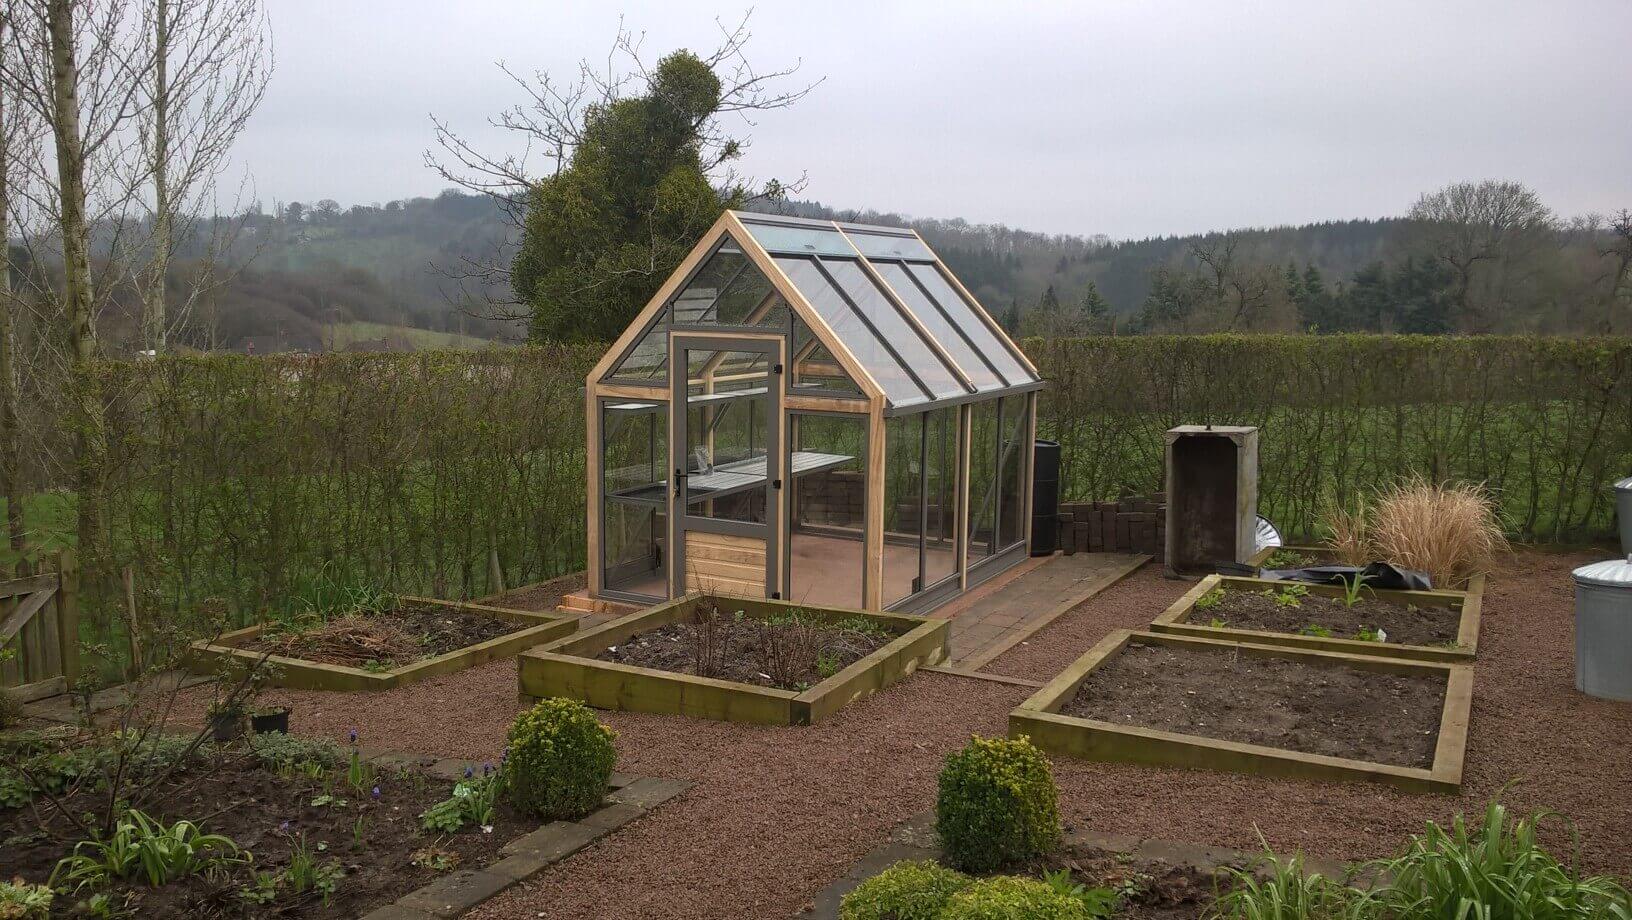 kitchen garden,raised beds, greenhouse